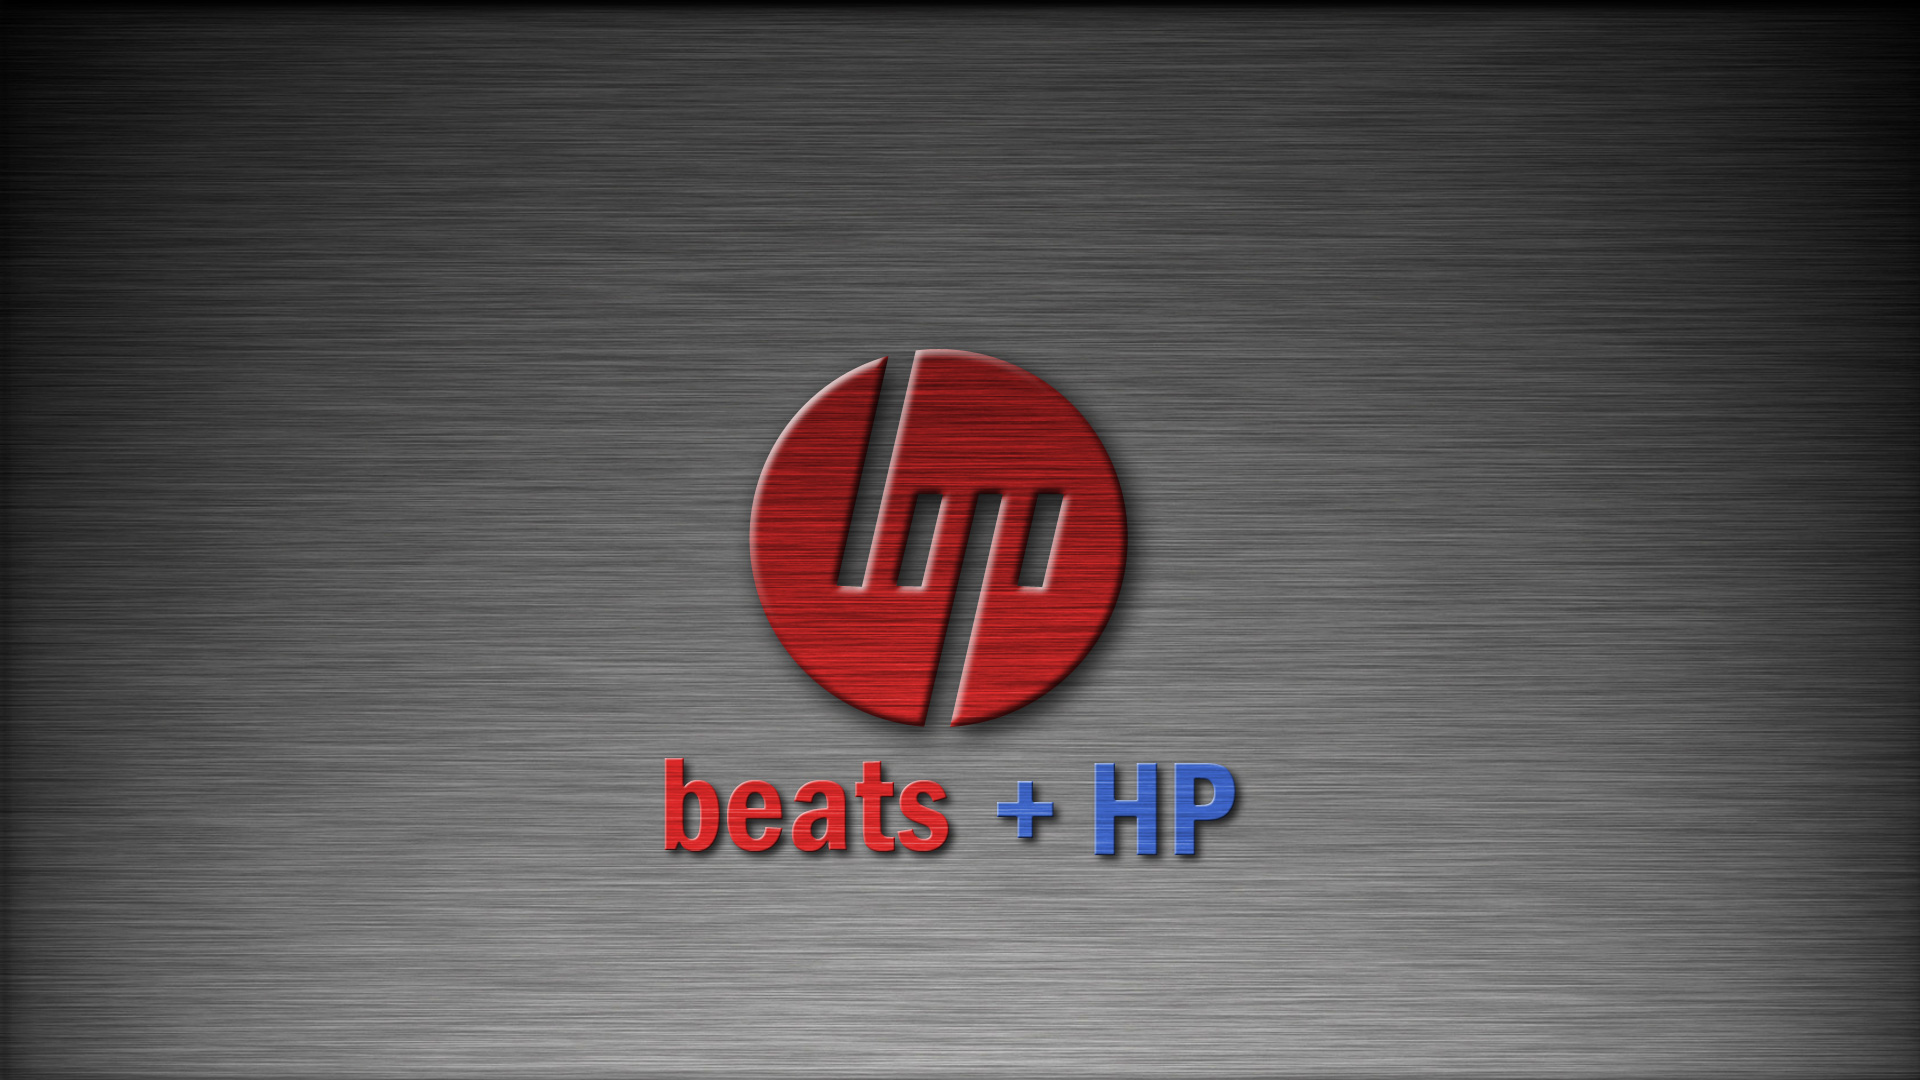 Hp Beats Wallpaper-98687l5 - Hp Beats Audio Wallpaper Hd - HD Wallpaper 